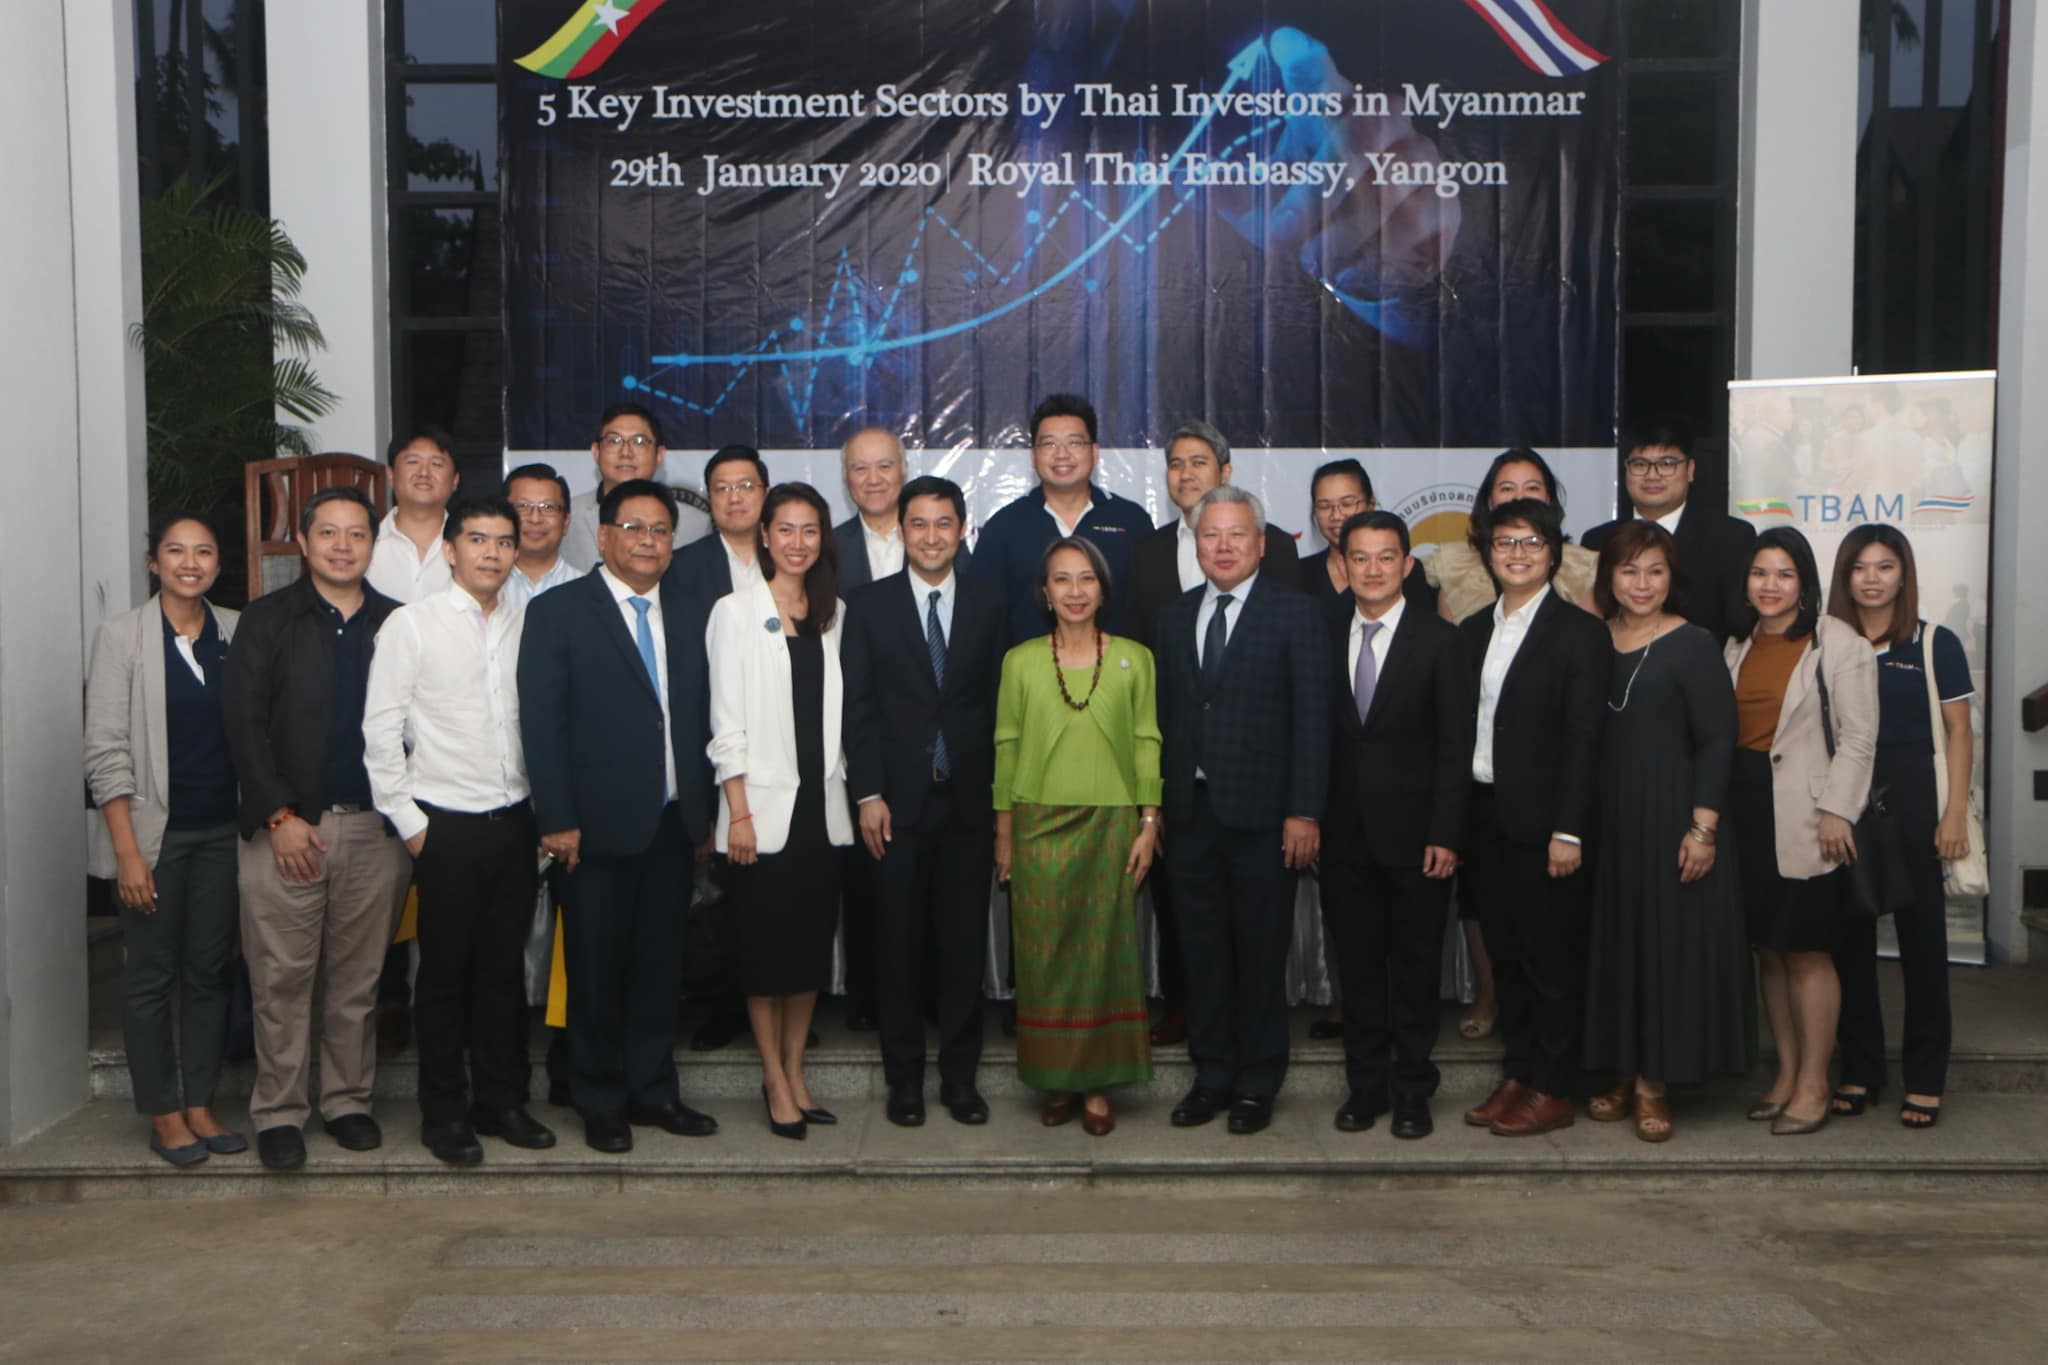 งานสัมมนาพิเศษ หัวข้อ "5 Key Investment Sectors by Thai Investors in Myanmar" 